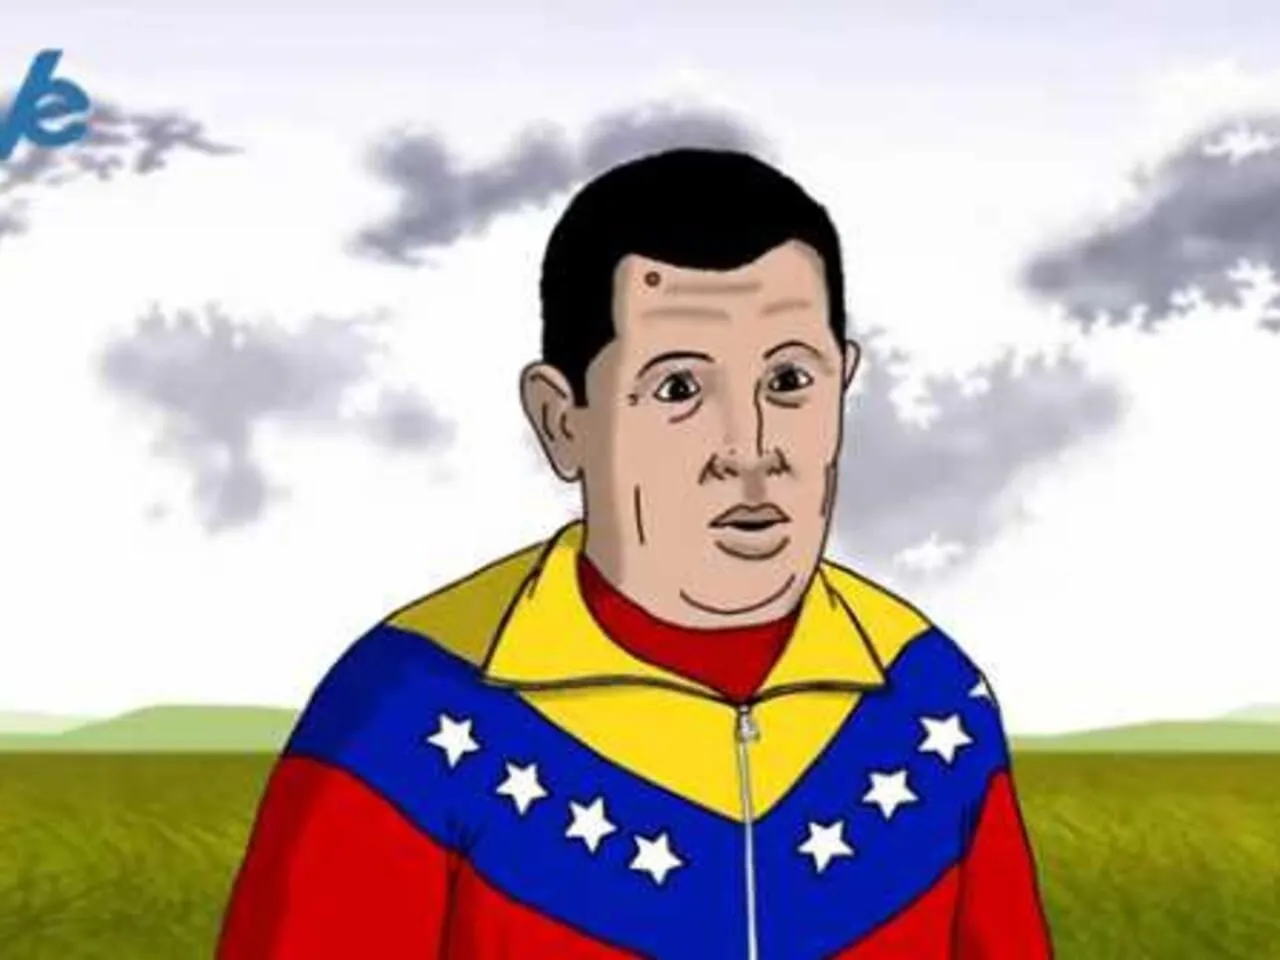 La llegada de Chávez al paraíso en dibujos animados